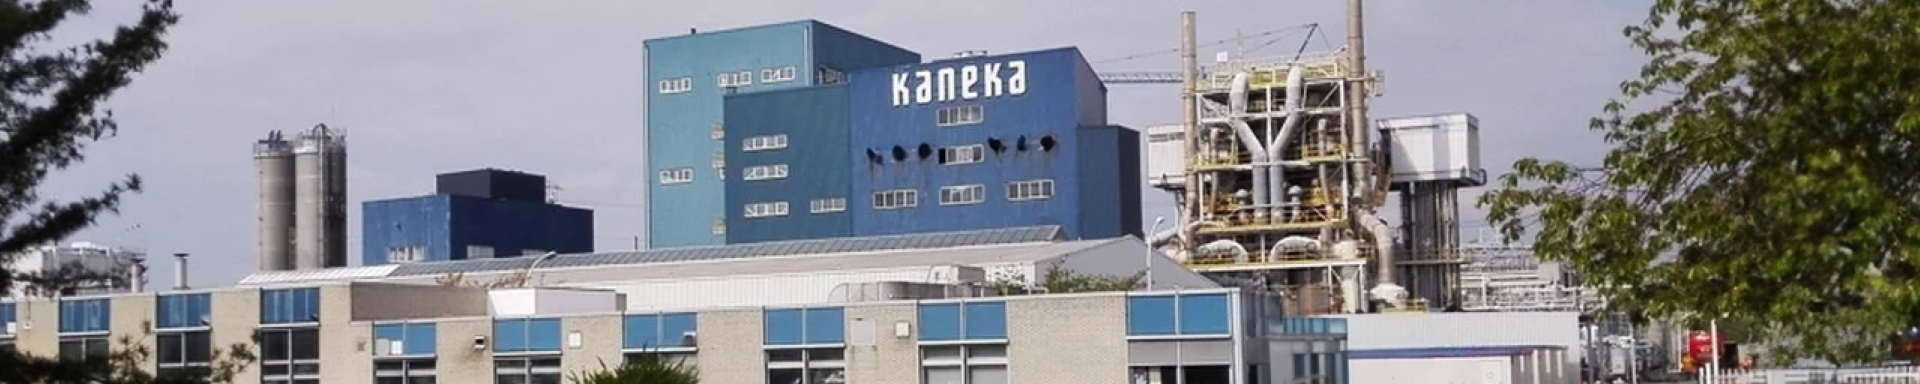 Kaneka 